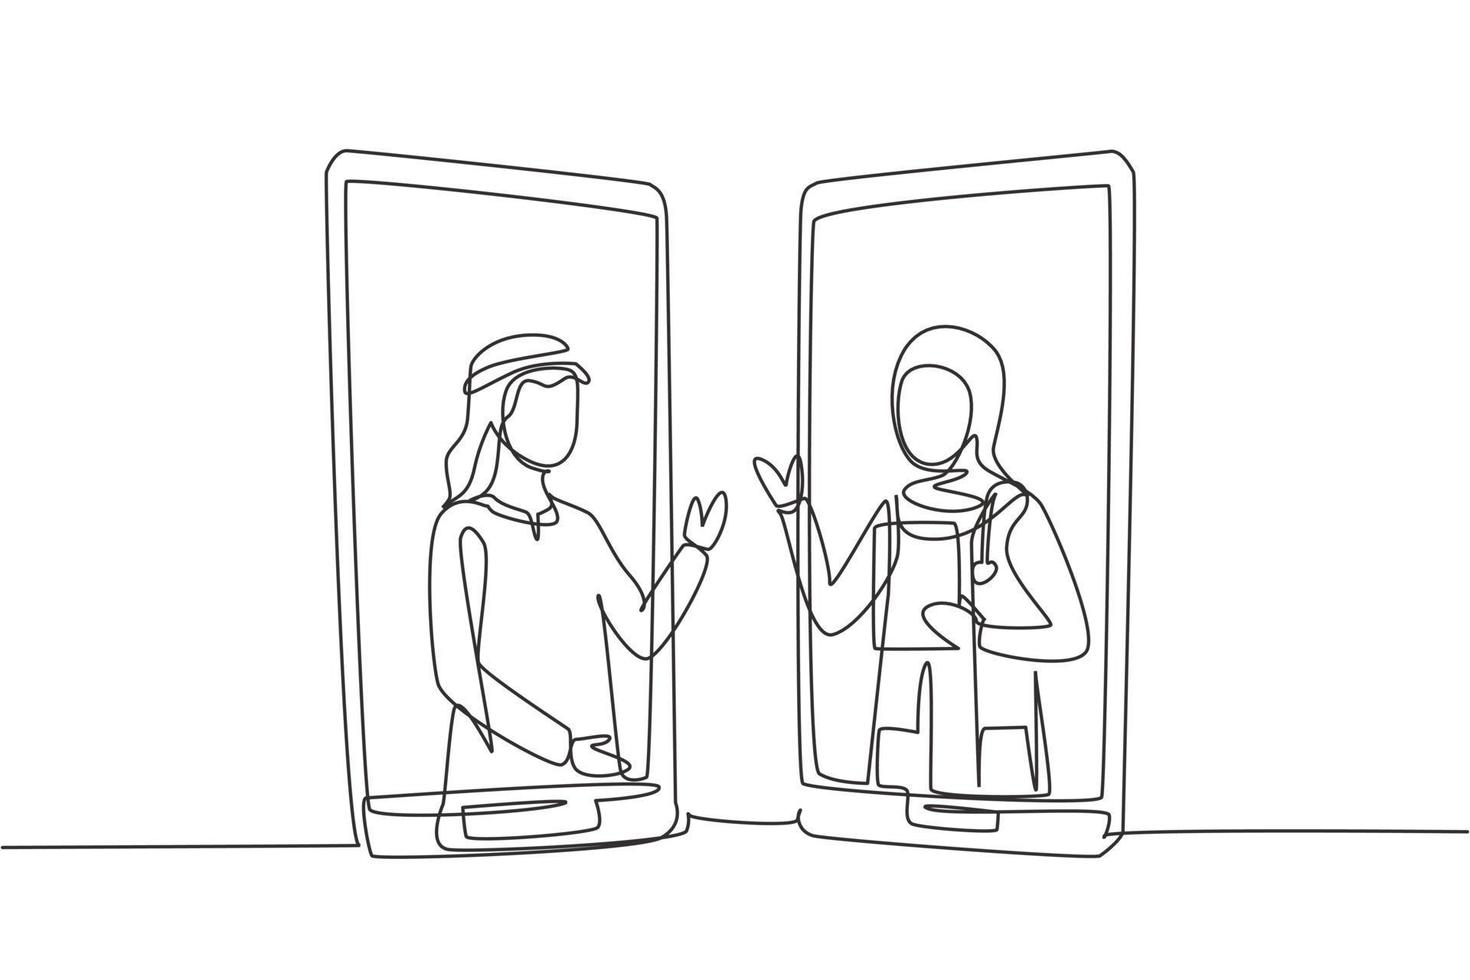 une seule ligne continue dessinant deux smartphones face à face et contenant un patient arabe et une femme médecin hijab avec leurs corps comme s'ils sortaient d'un smartphone. conception graphique dynamique d'une seule ligne vecteur